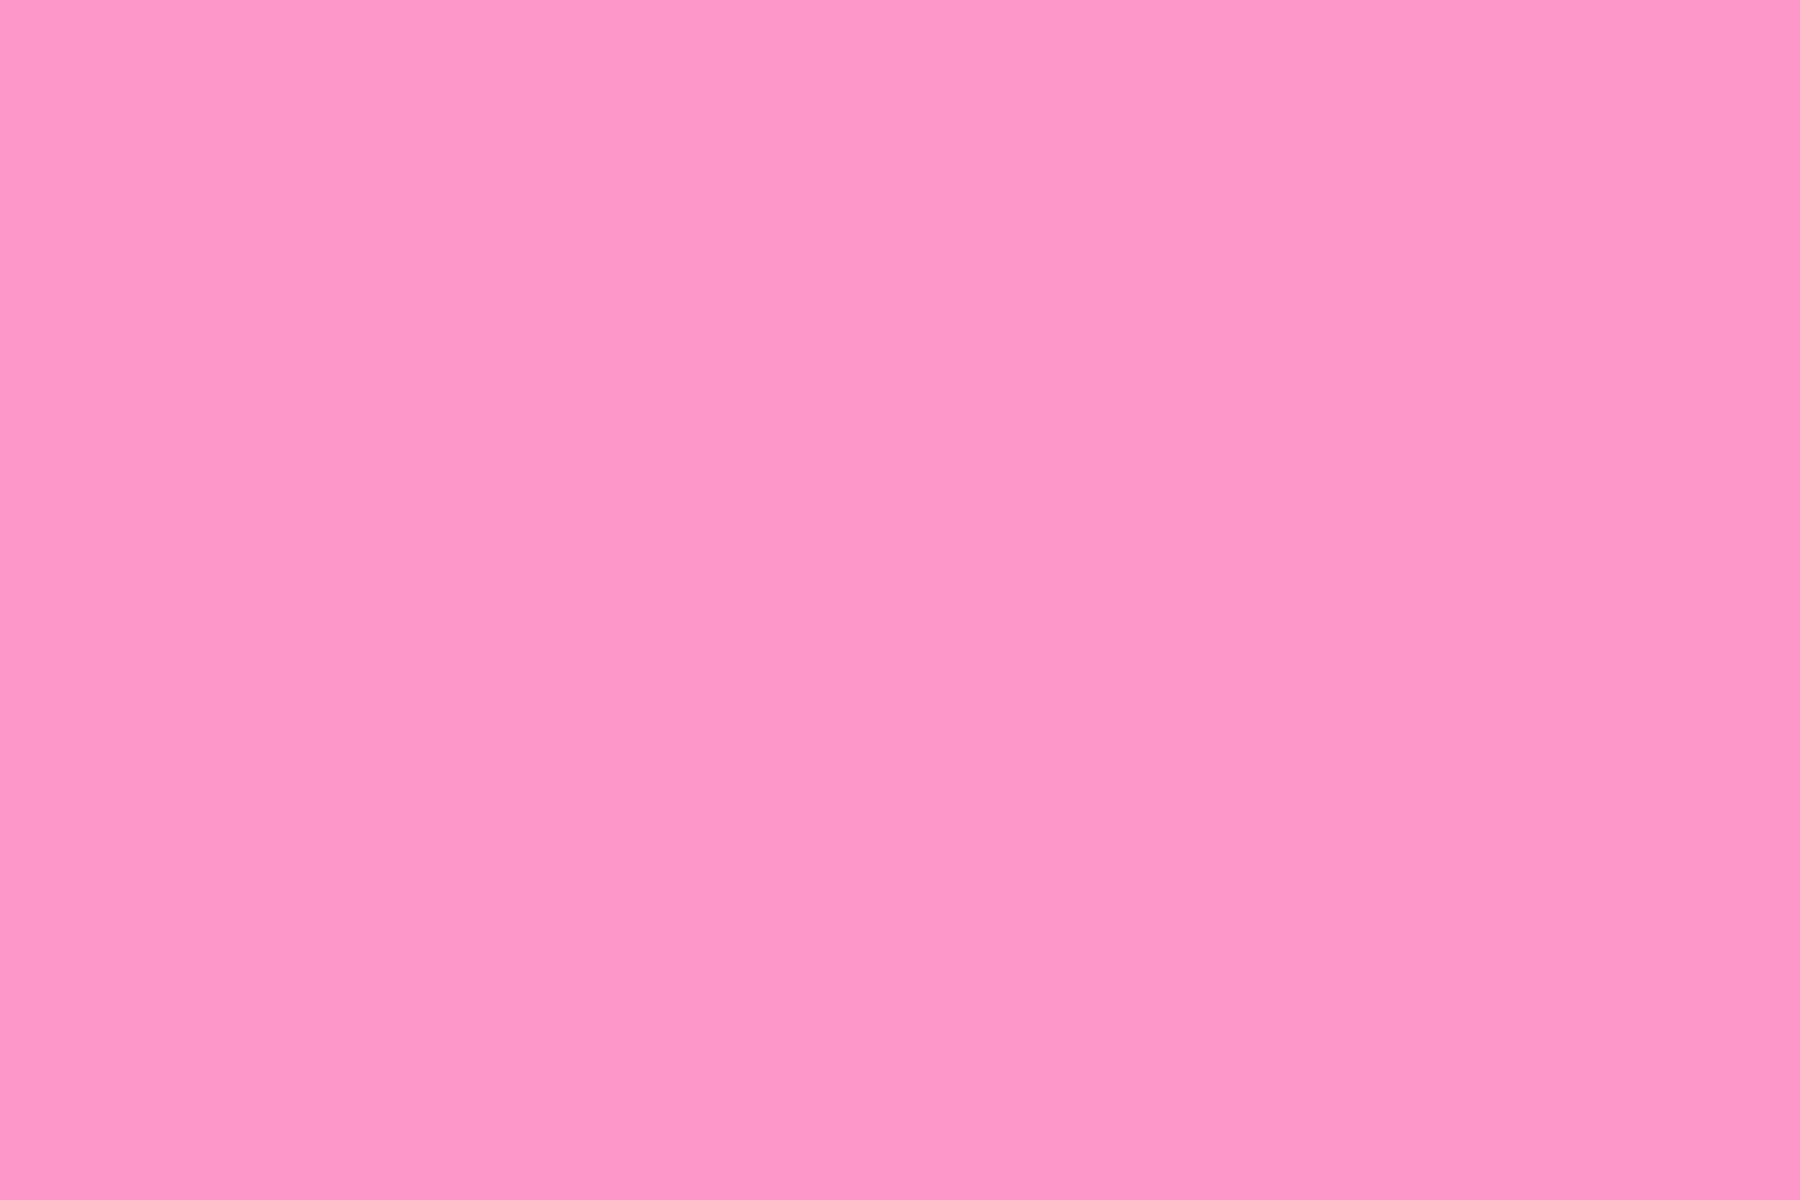 HD wallpaper, Plain, Backgrounds, Pink